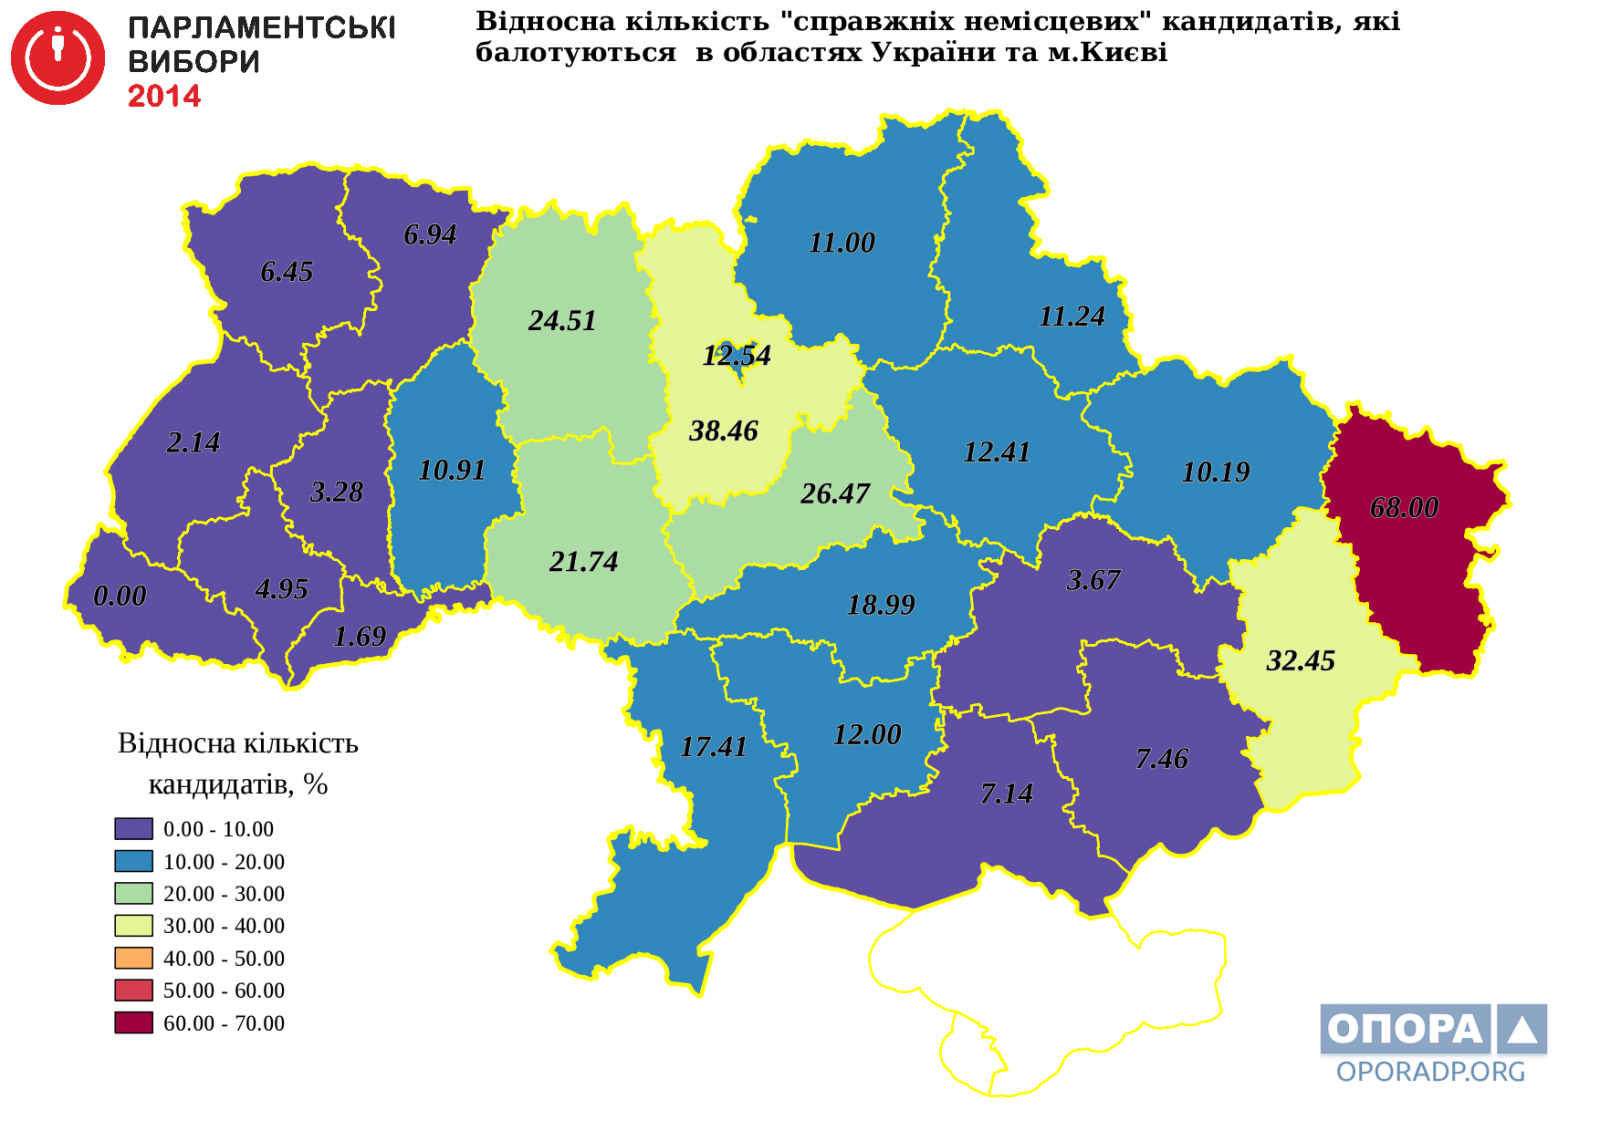 Відносна кількість "справжніх немісцевих" кандидатів, які балотуються в областях України та м.Києві